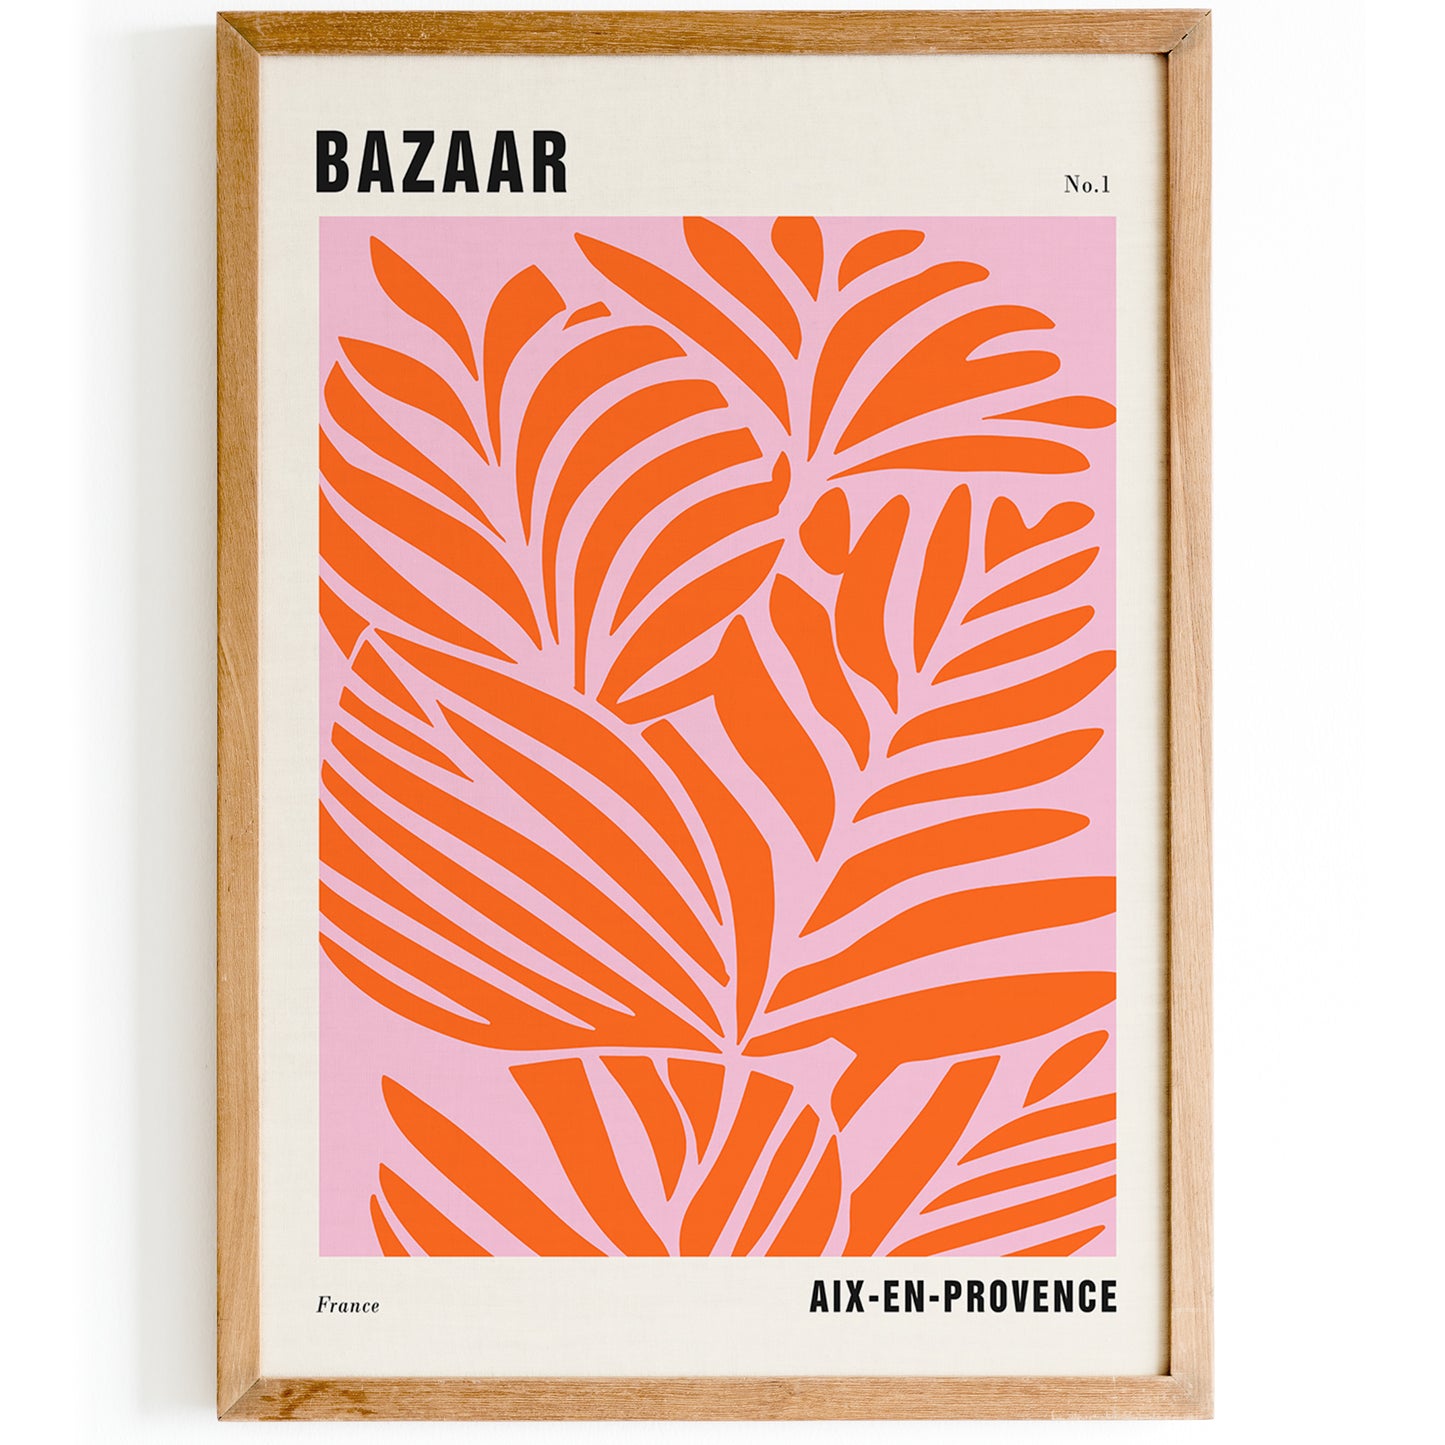 Aix-en-Provence Bazaar Poster